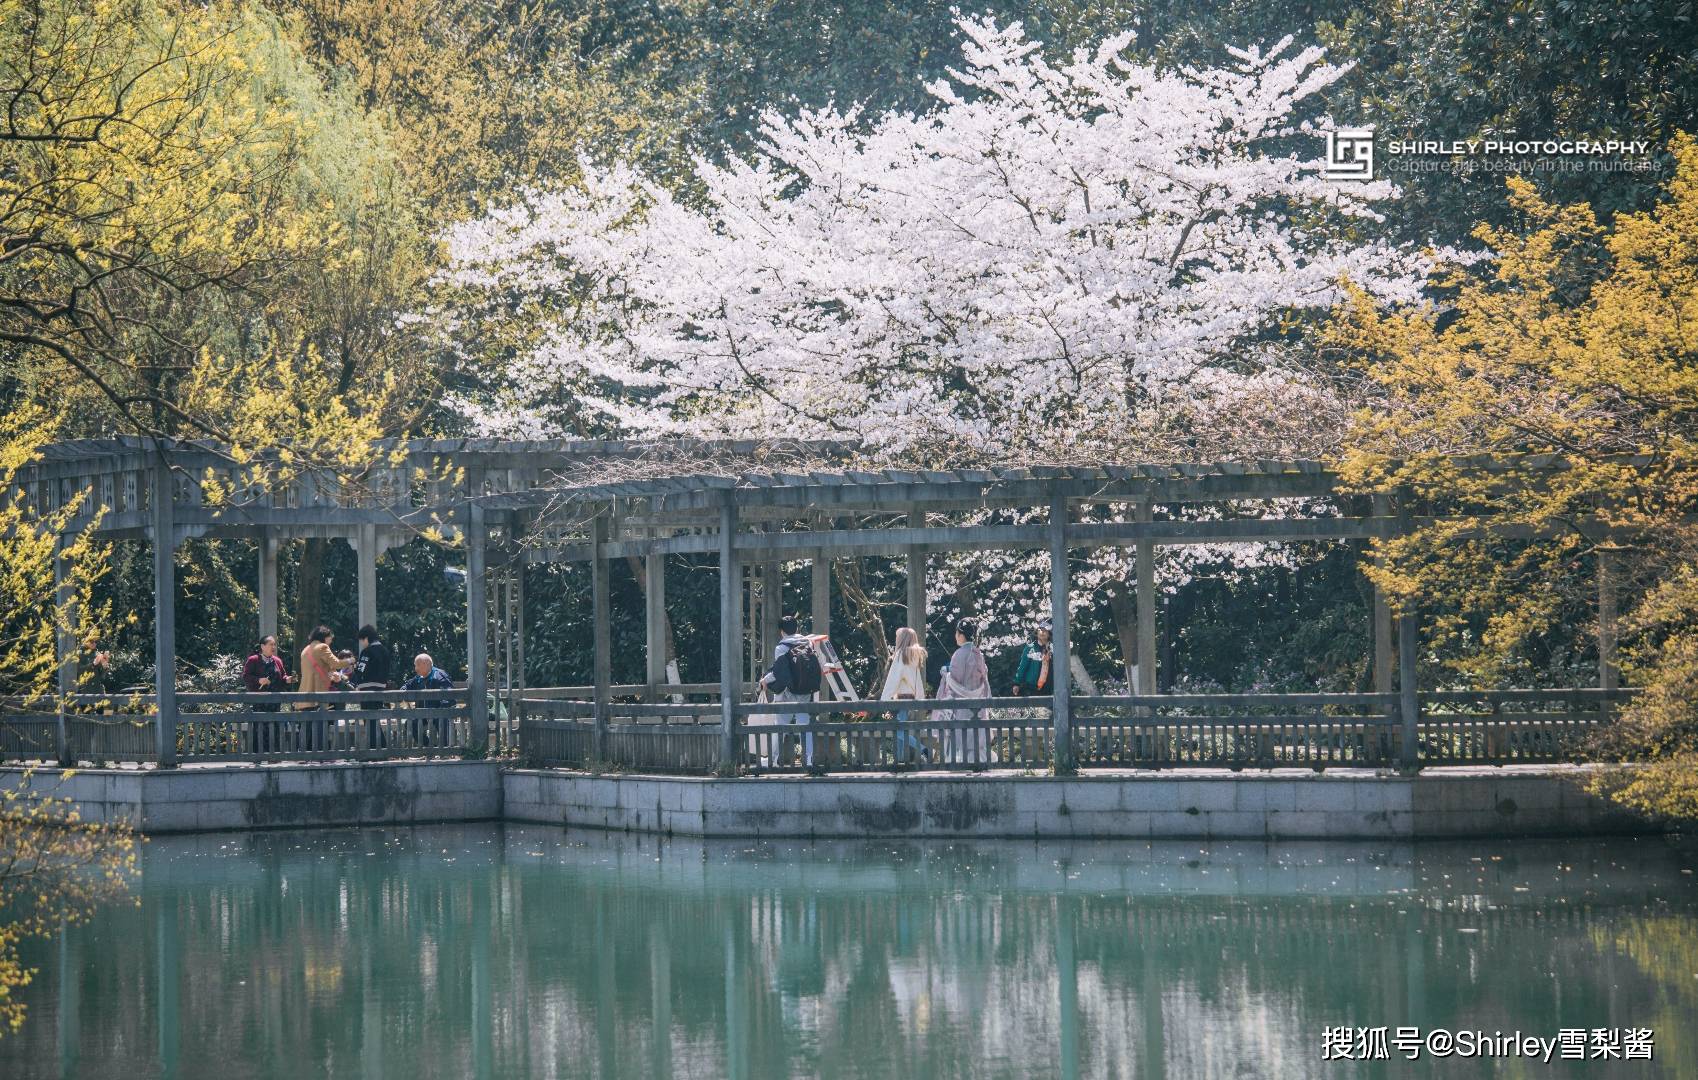 原创杭州私家春游攻略:西湖这几处小众赏花地别错过,人少景美还免费